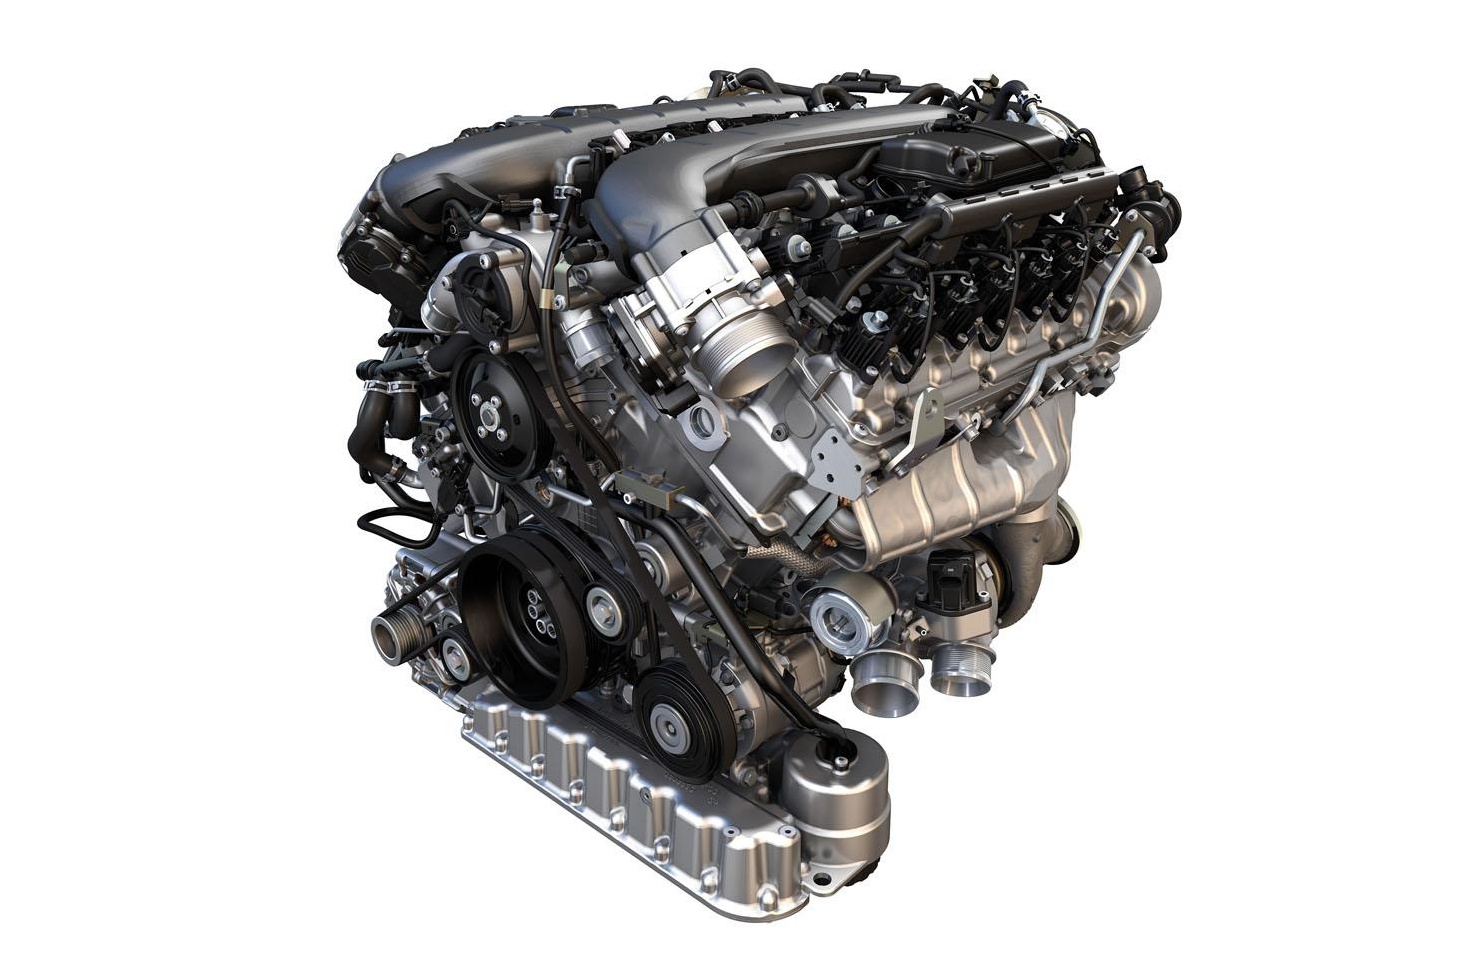 VW представил новейшие моторы, включая однолитровый 272-сильный агрегат